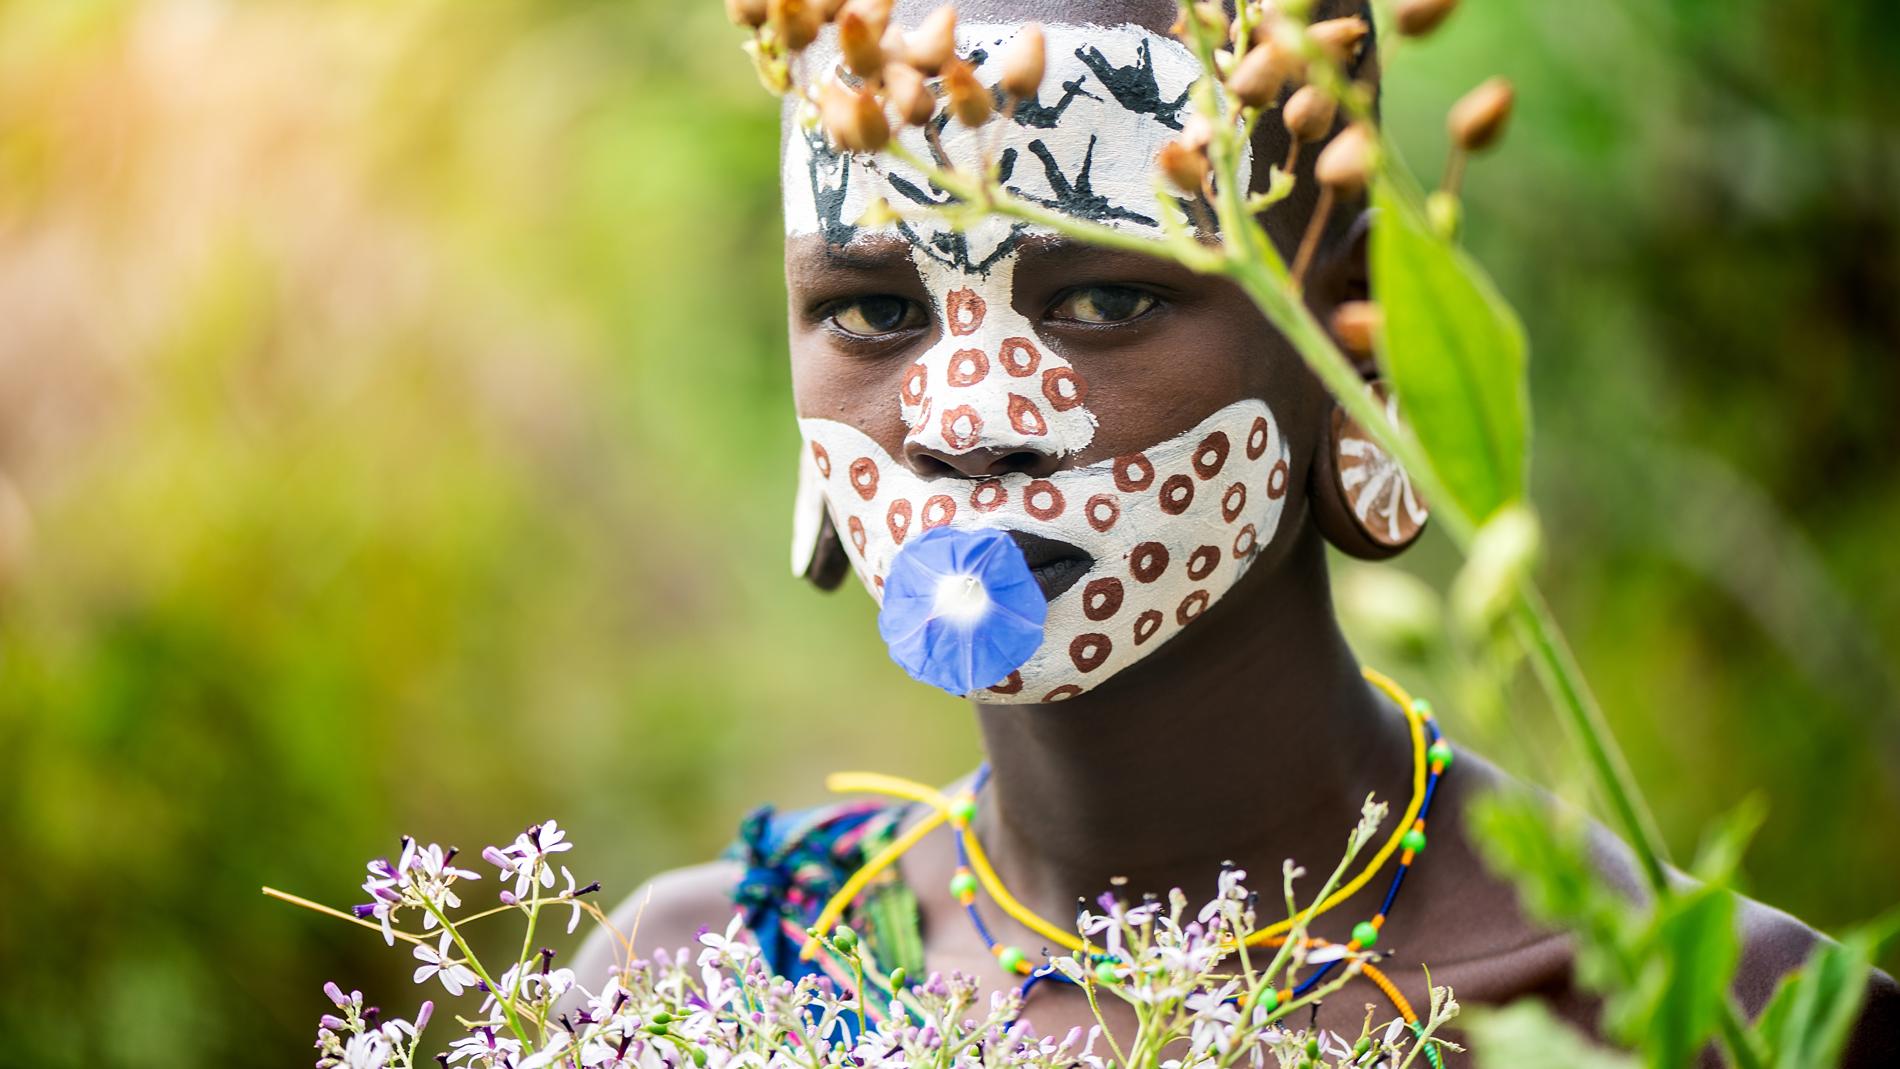 Секс в африканских племенах – дикие традиции современности